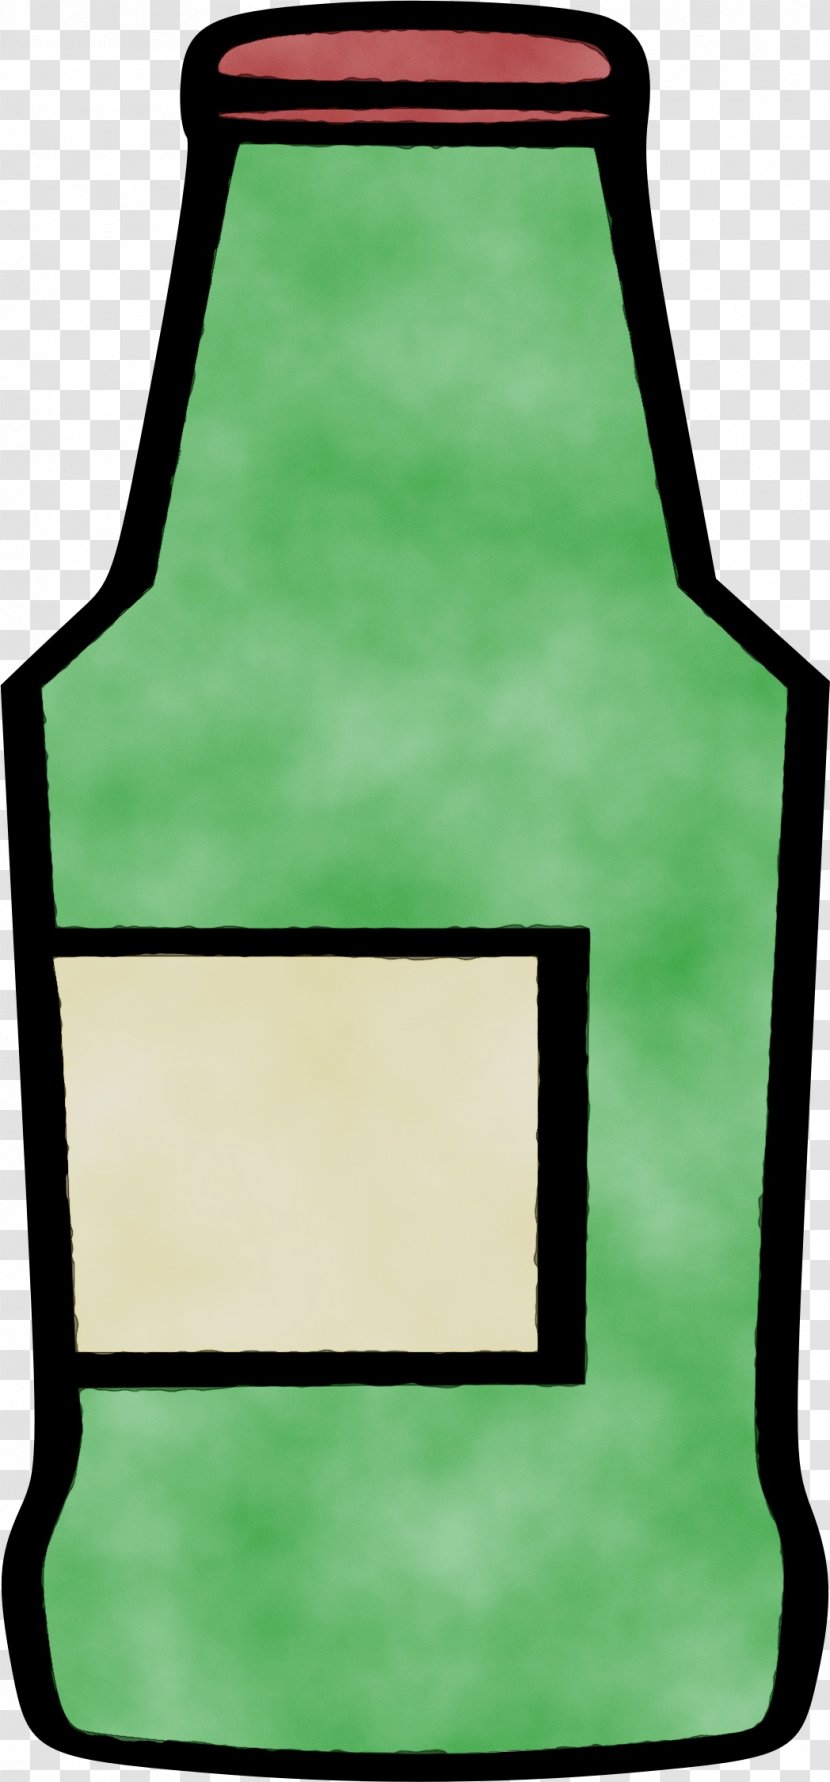 Web Design - Bottle - Rectangle Green Transparent PNG